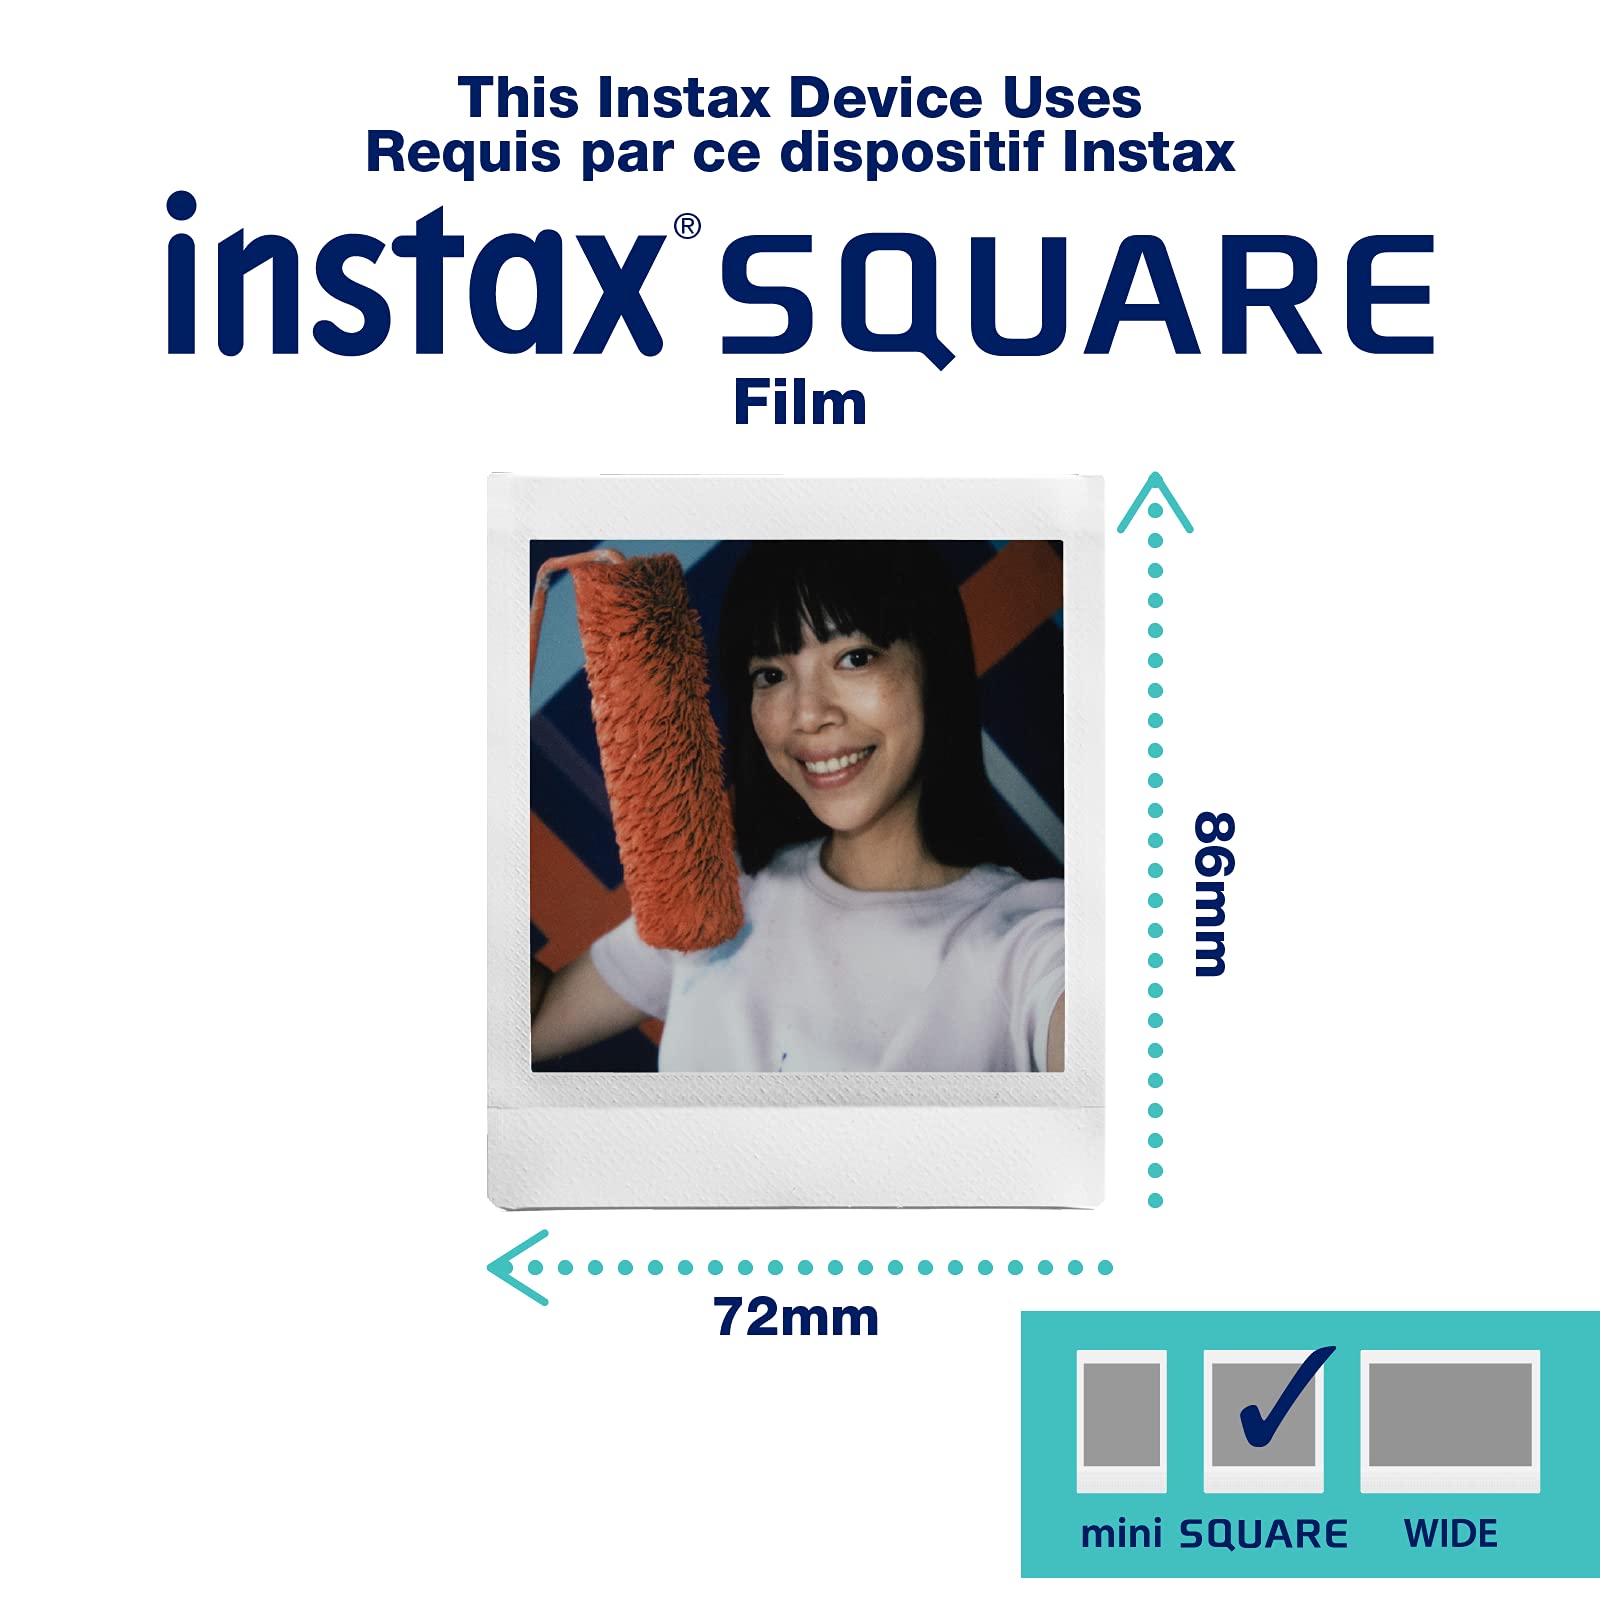 Fujifilm Instax Square Link Smartphone Printer- Ash White